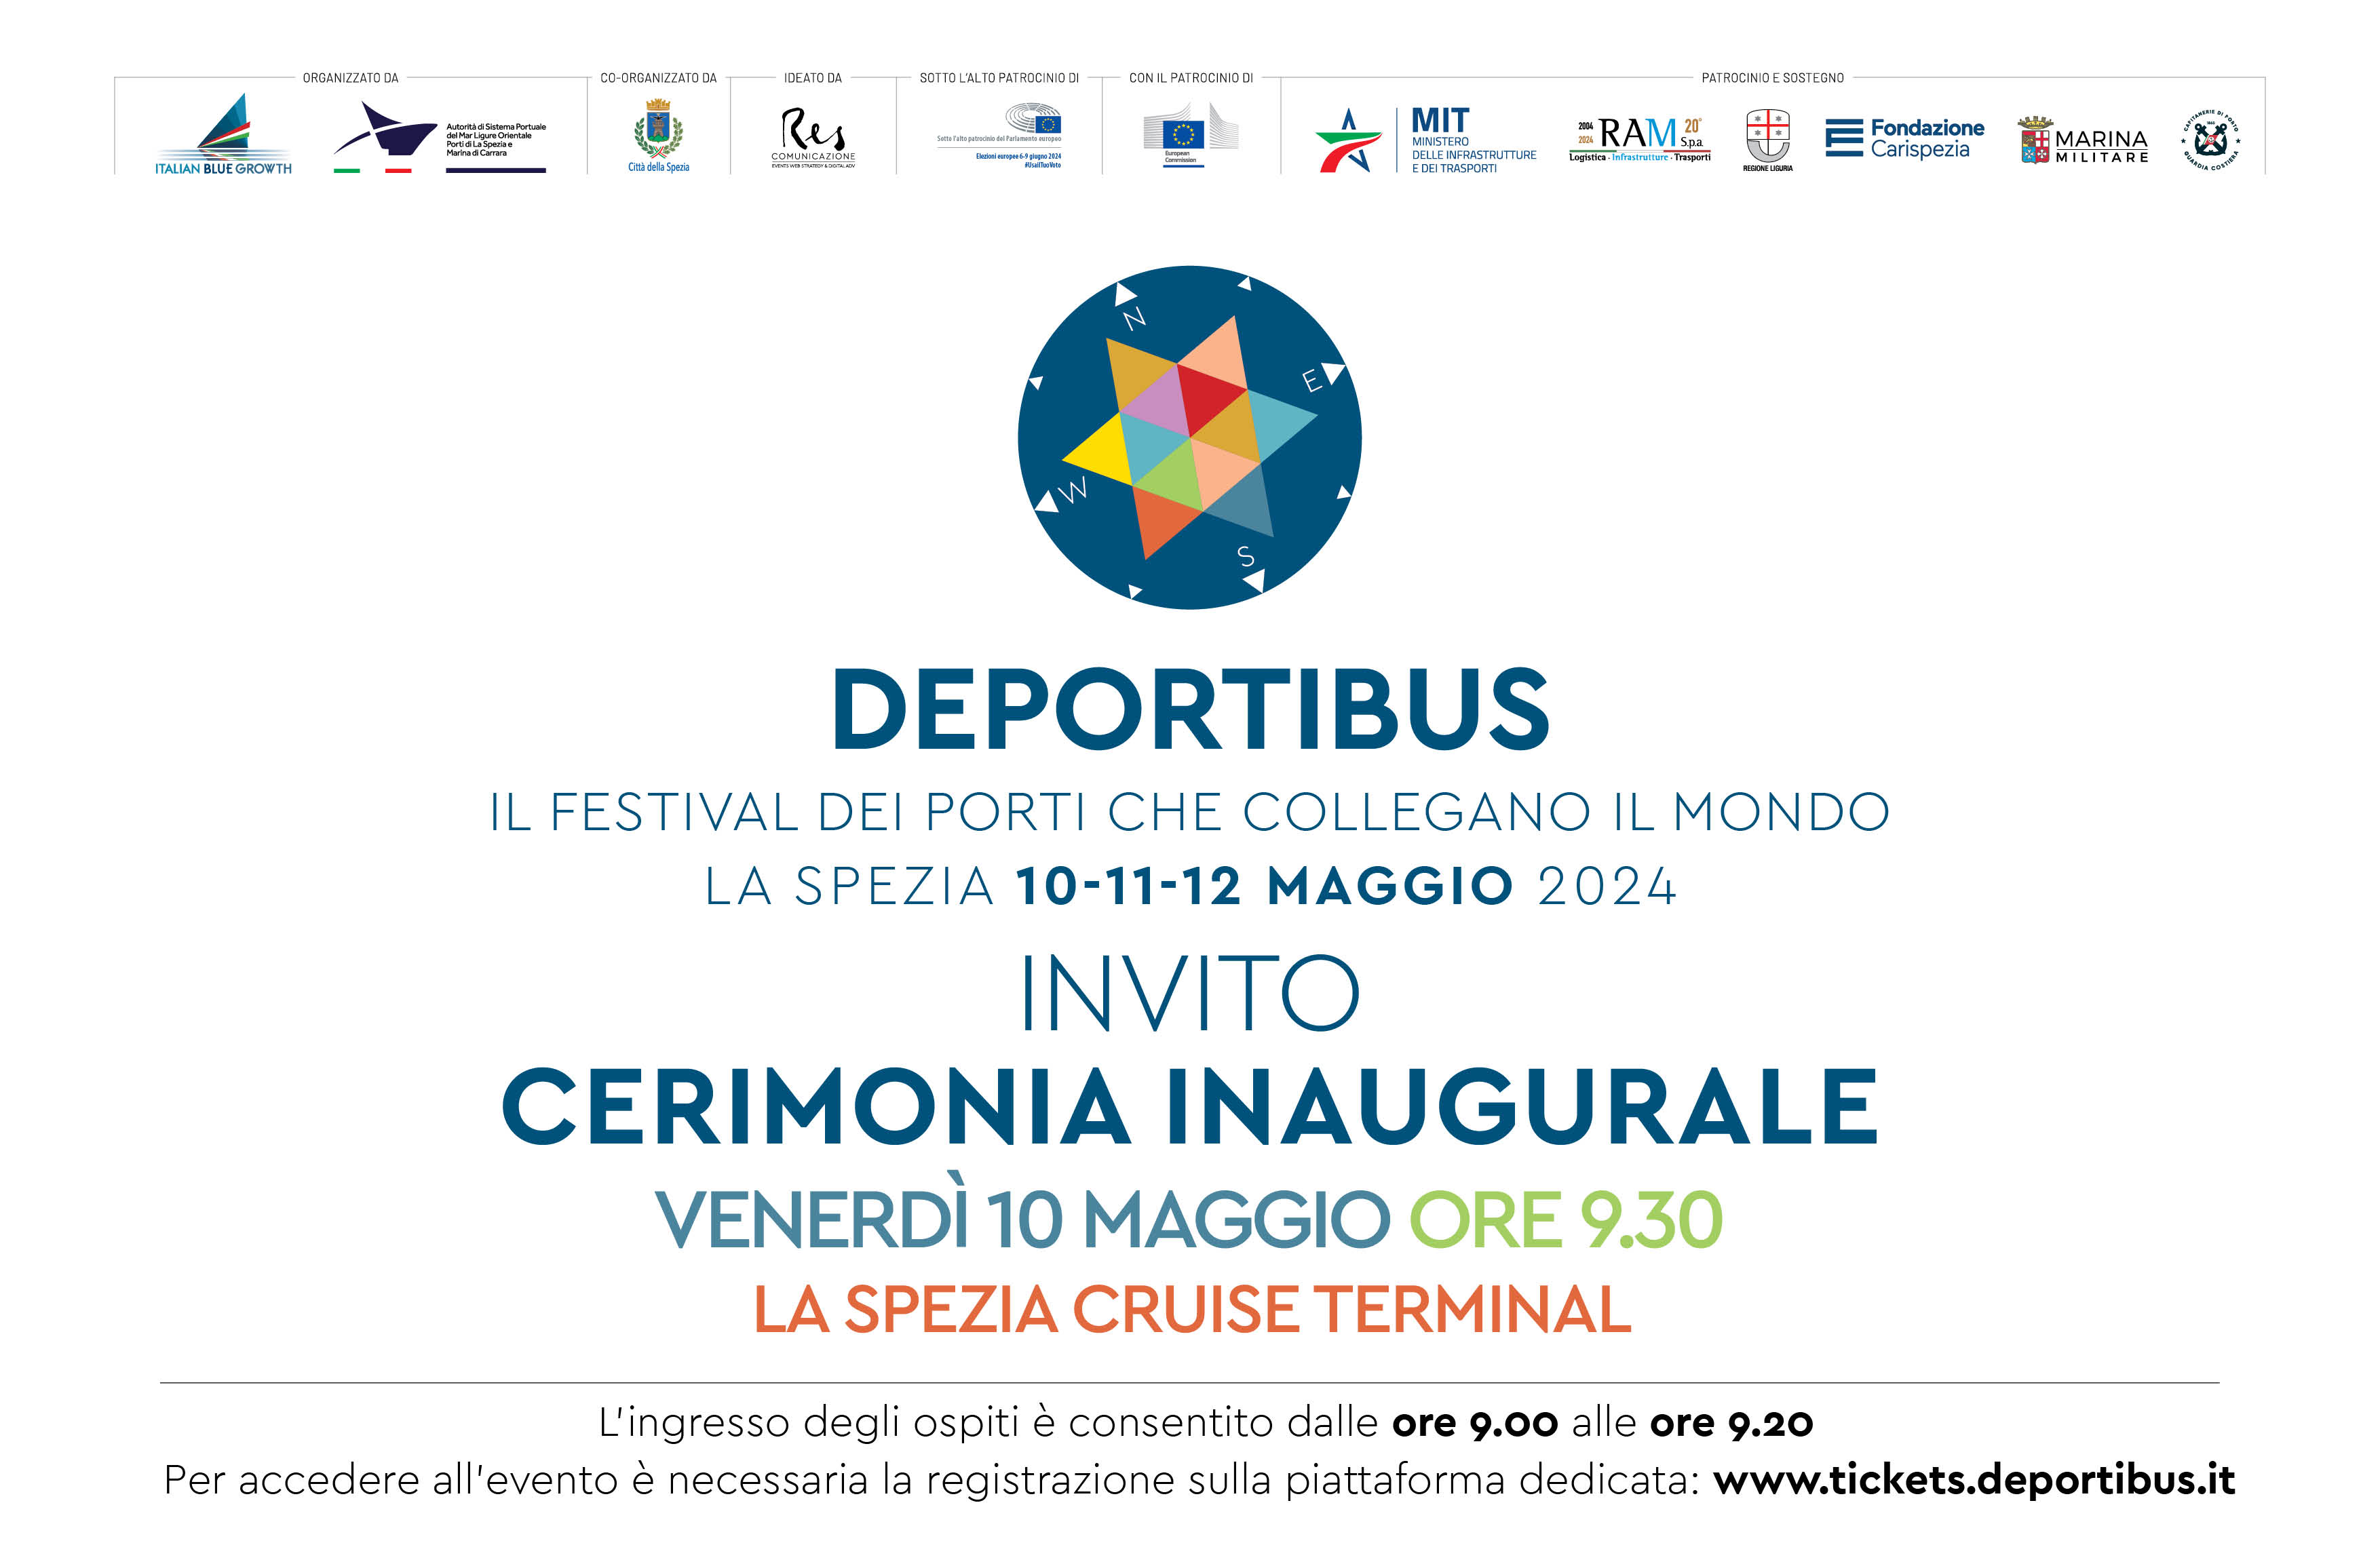 DePortibus | Il festival dei porti che collegano il mondo